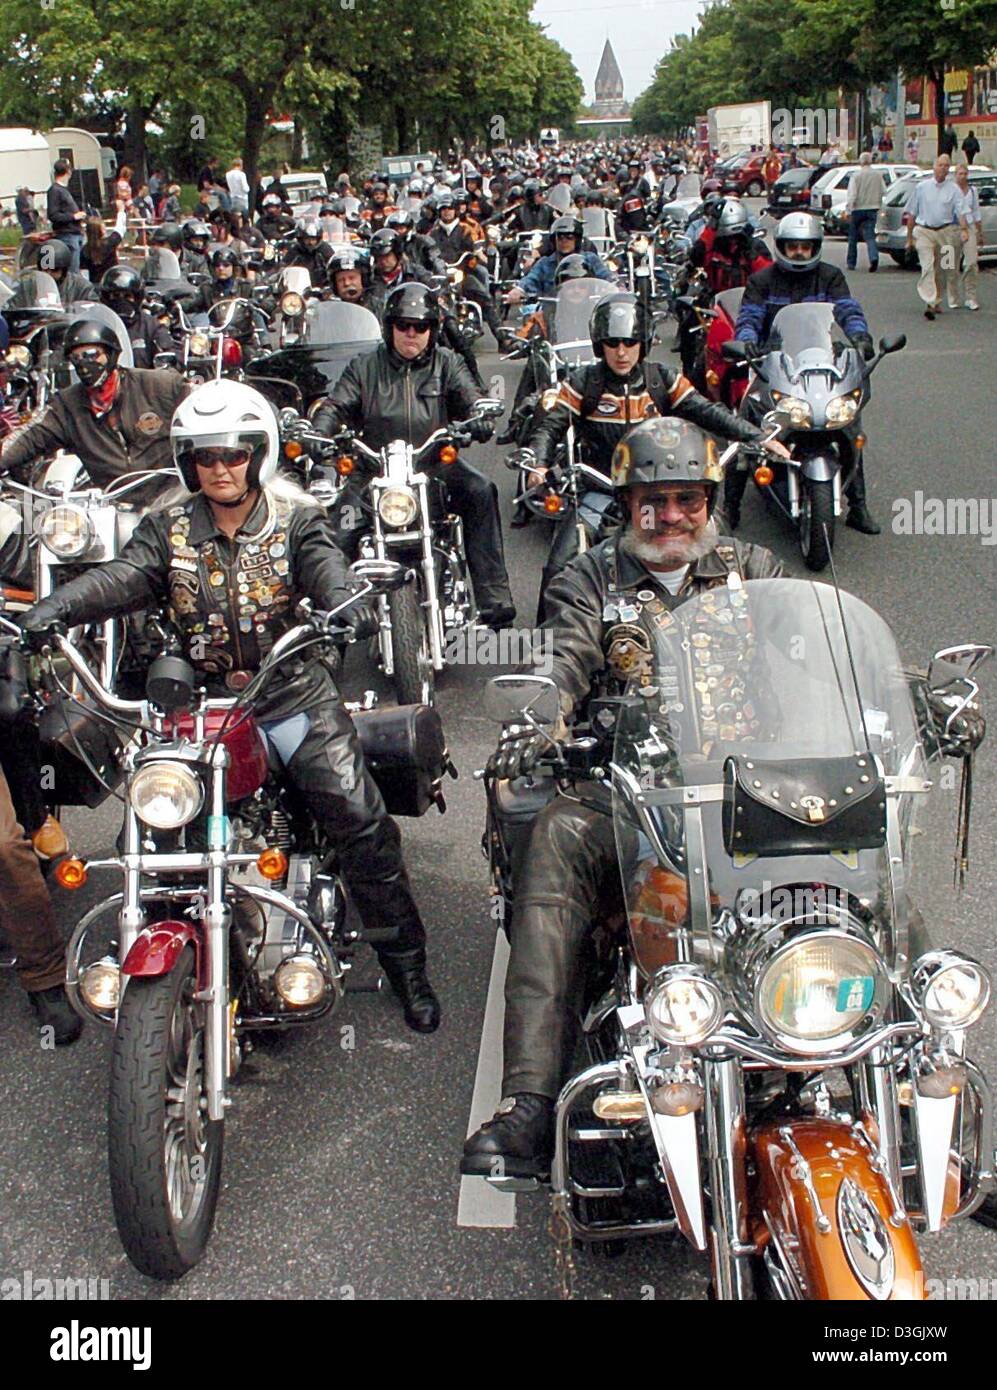 Afp) - Des milliers de fans de Harley s'asseoir sur leurs motos et attendre  le début de la moto à Hambourg, Allemagne, 25 juillet 2004. La parade a  marqué un point culminant